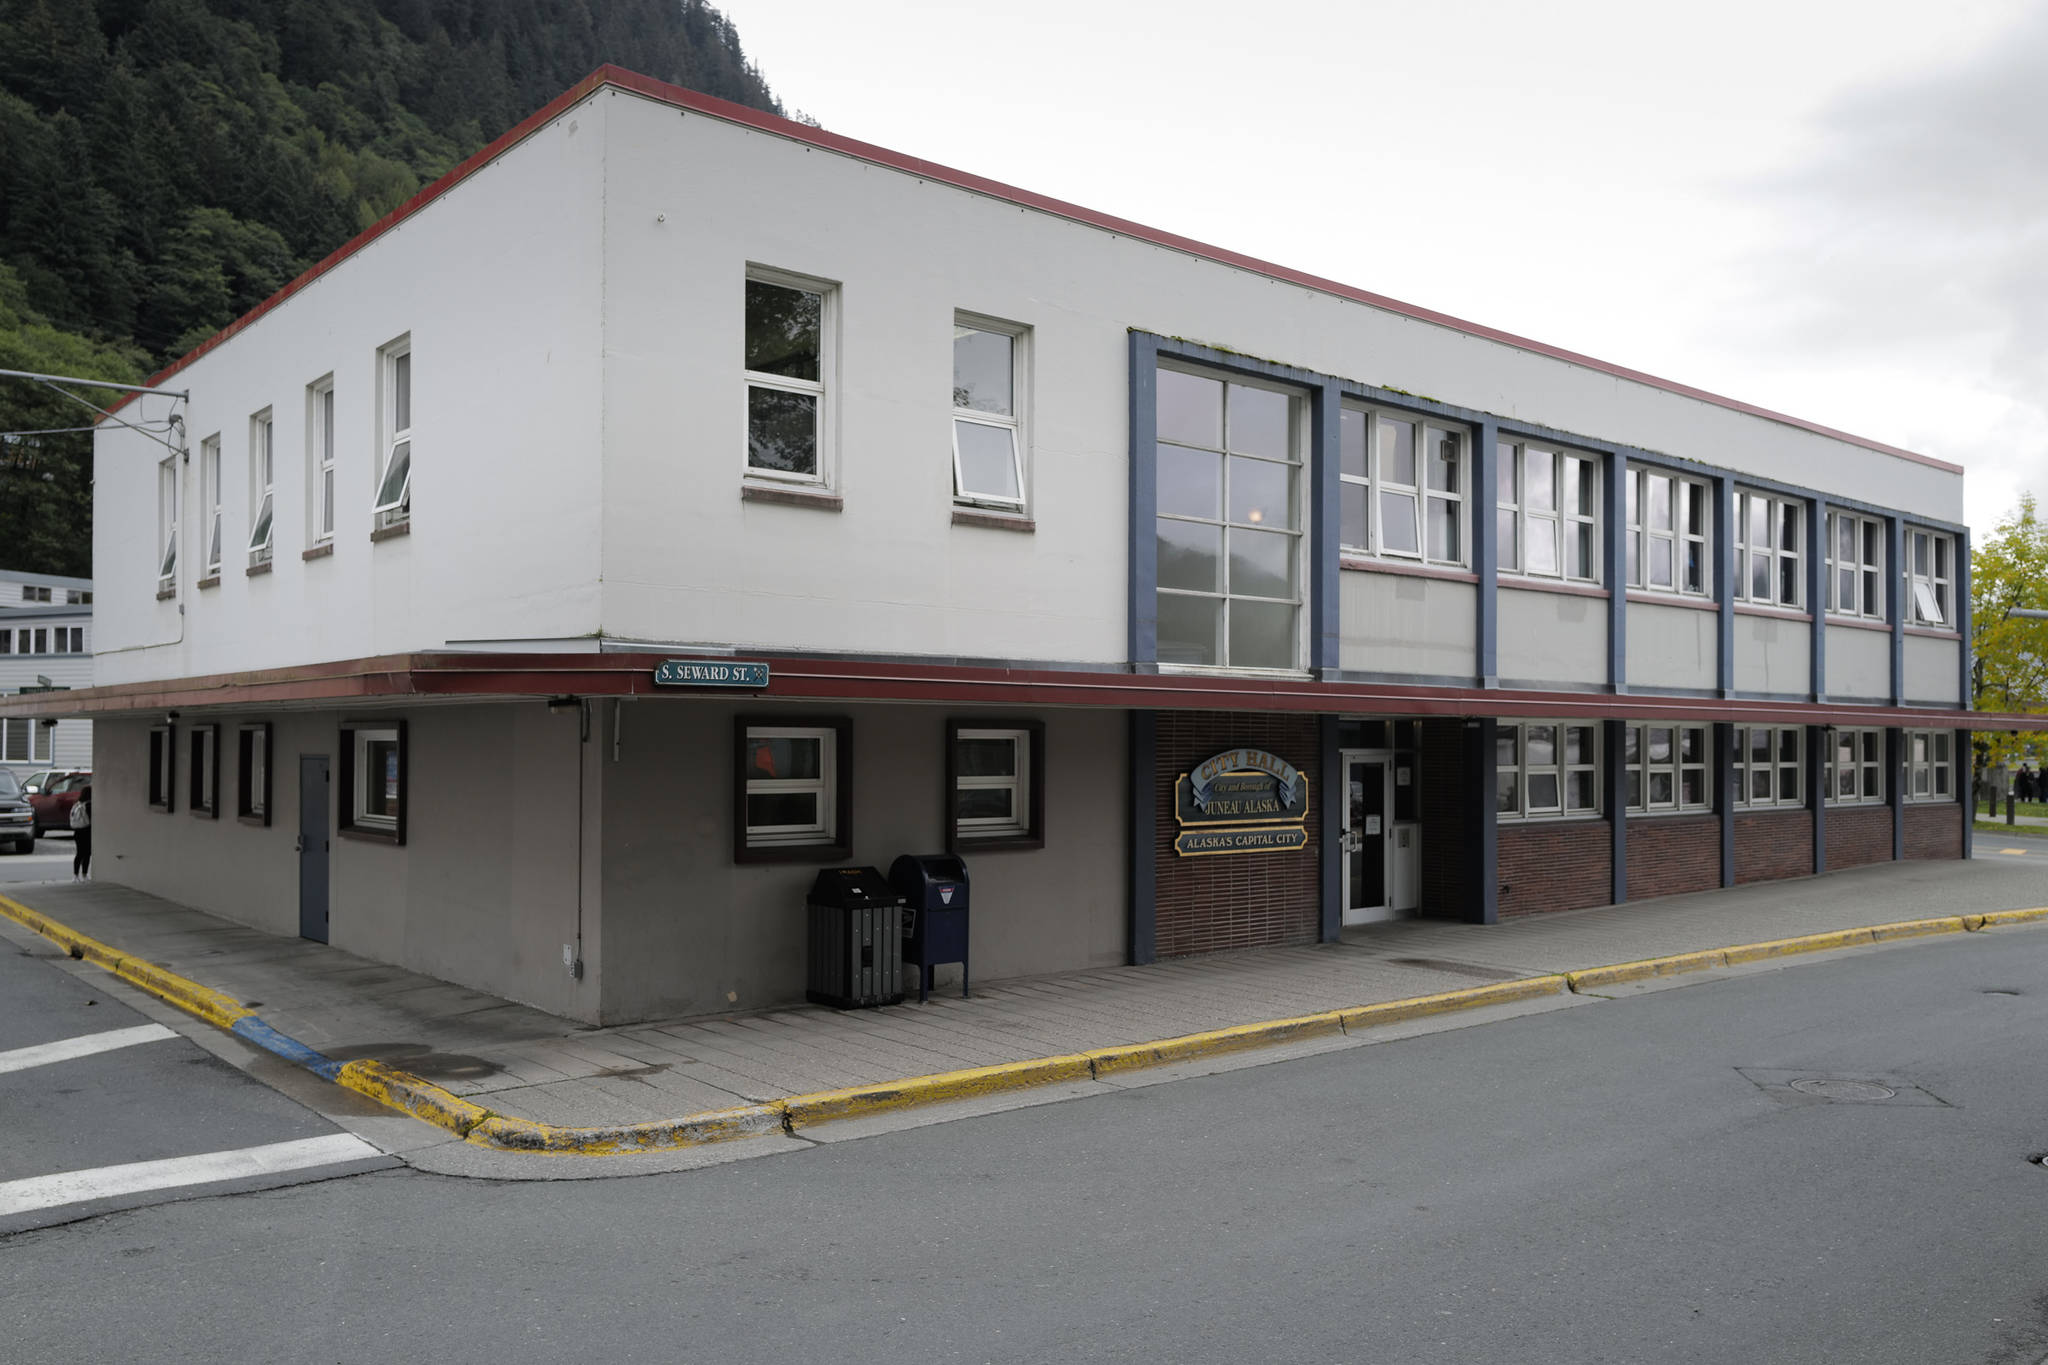 Juneau’s City Hall on Wednesday, Sept. 4, 2019. (Michael Penn | Juneau Empire)